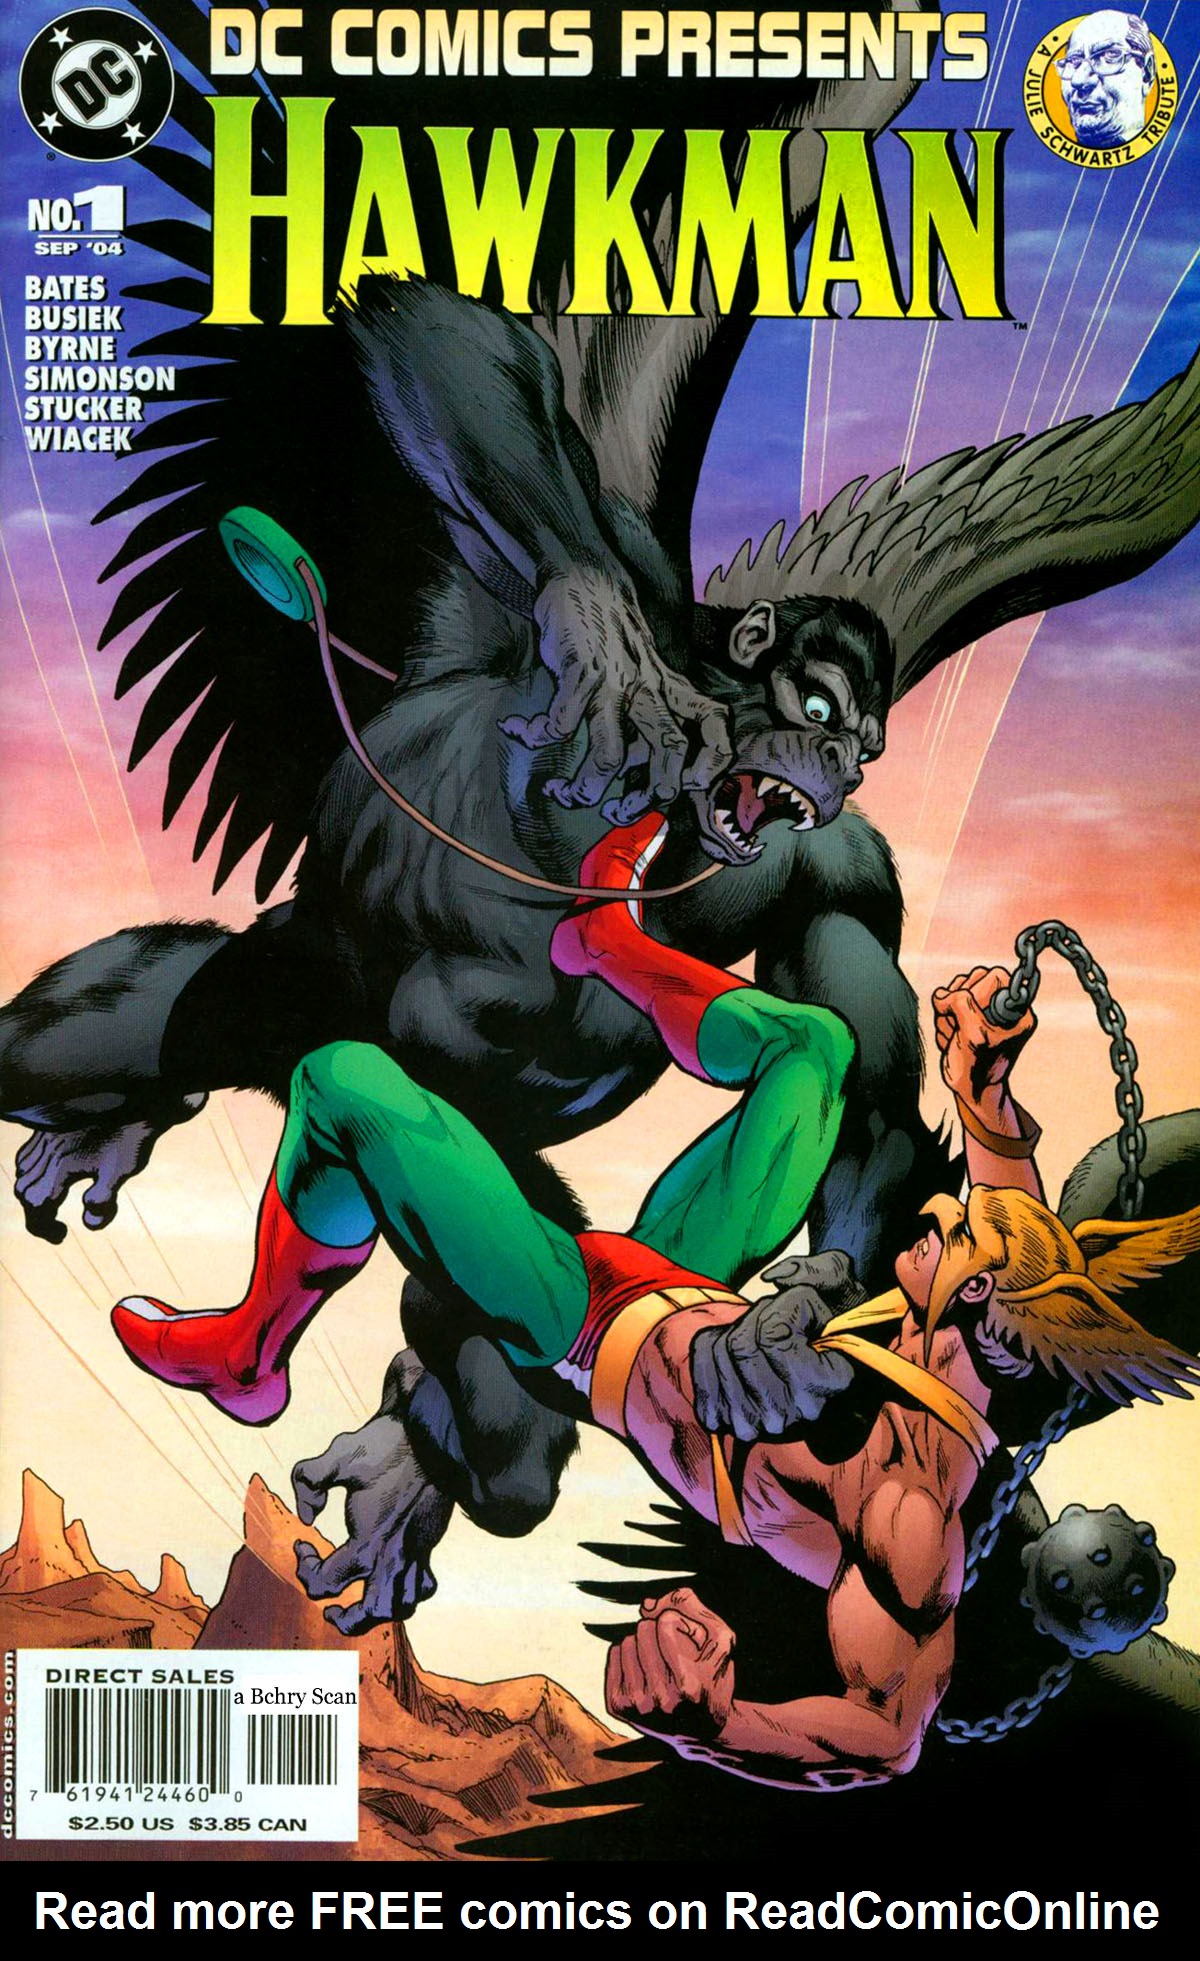 Read online DC Comics Presents (2004) comic -  Issue # Hawkman - 1